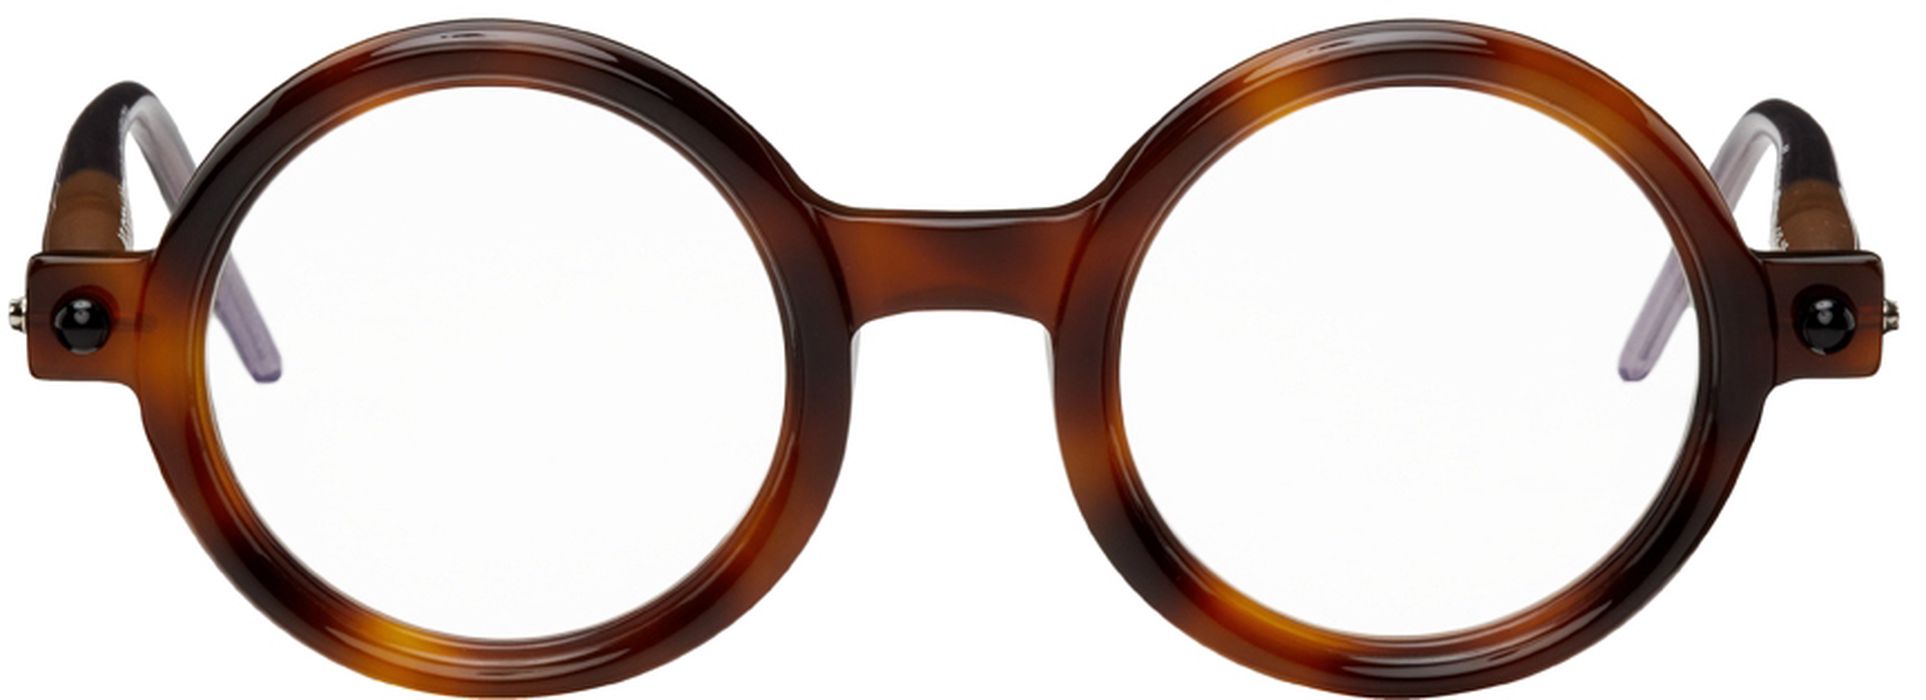 Kuboraum P1 Glasses